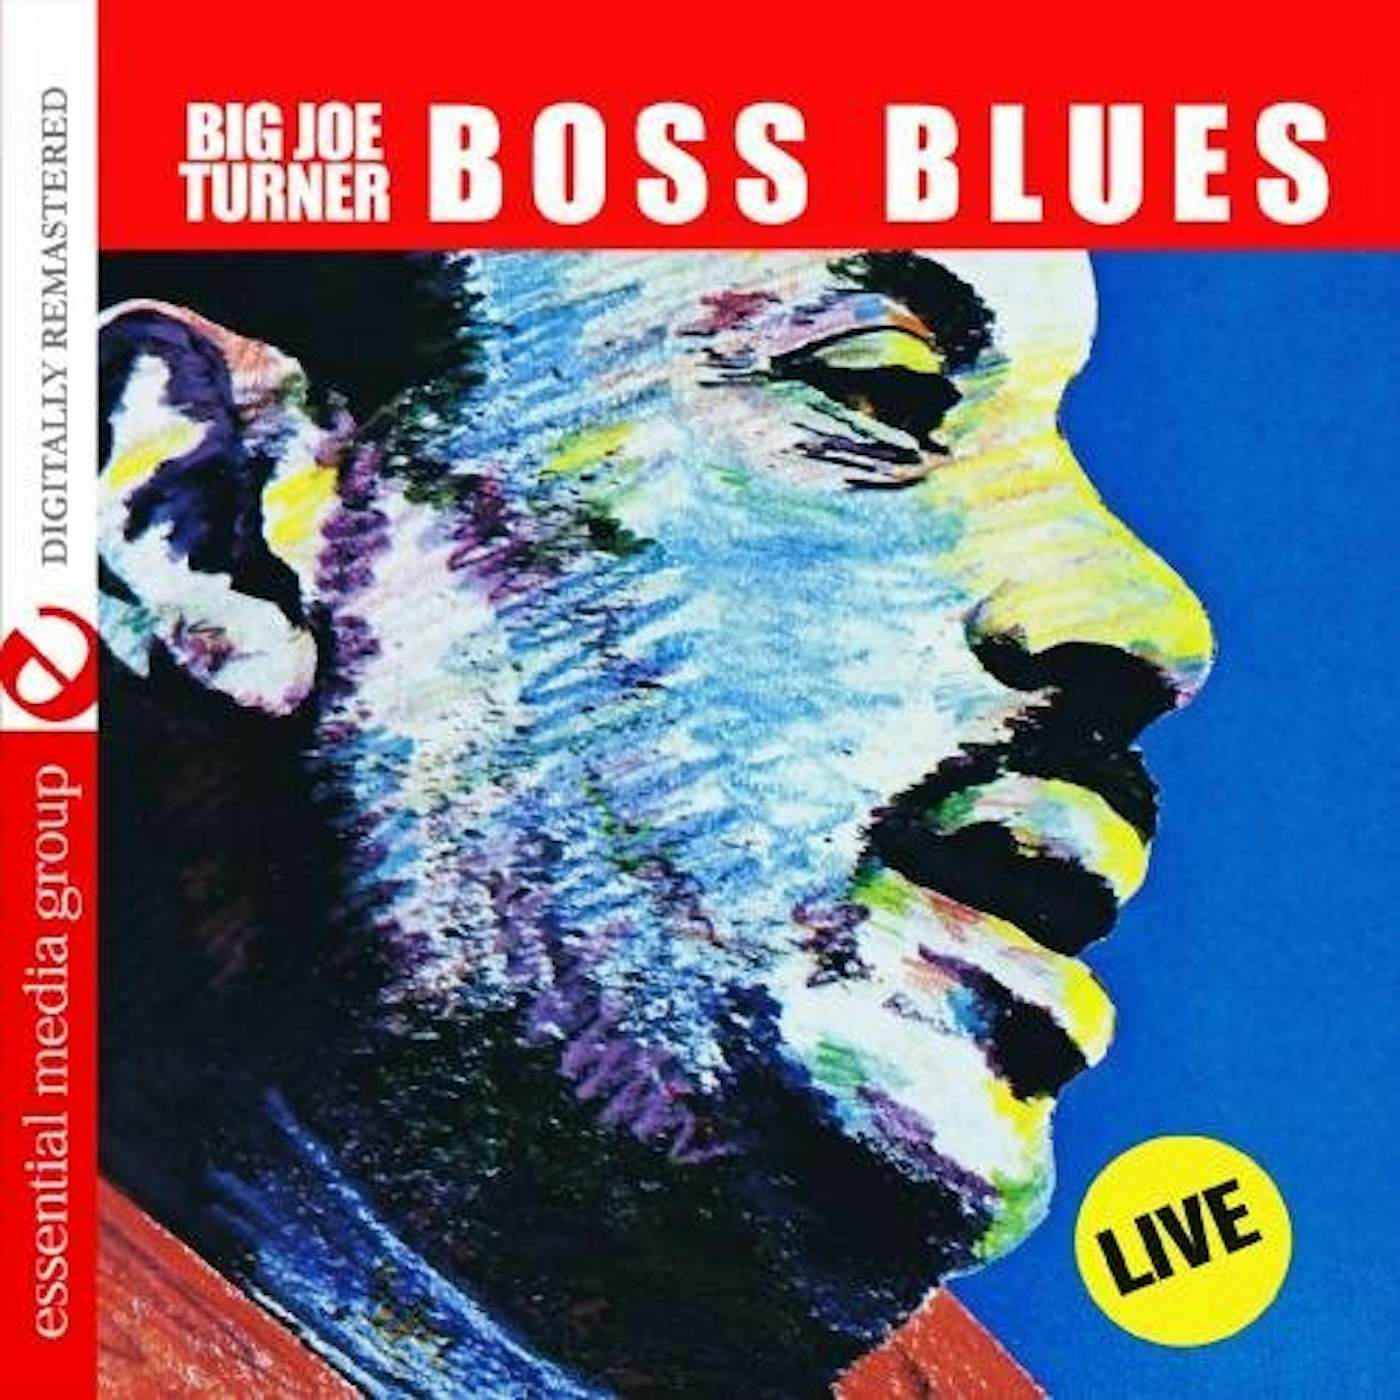 Big Joe Turner BOSS BLUES: LIVE CD